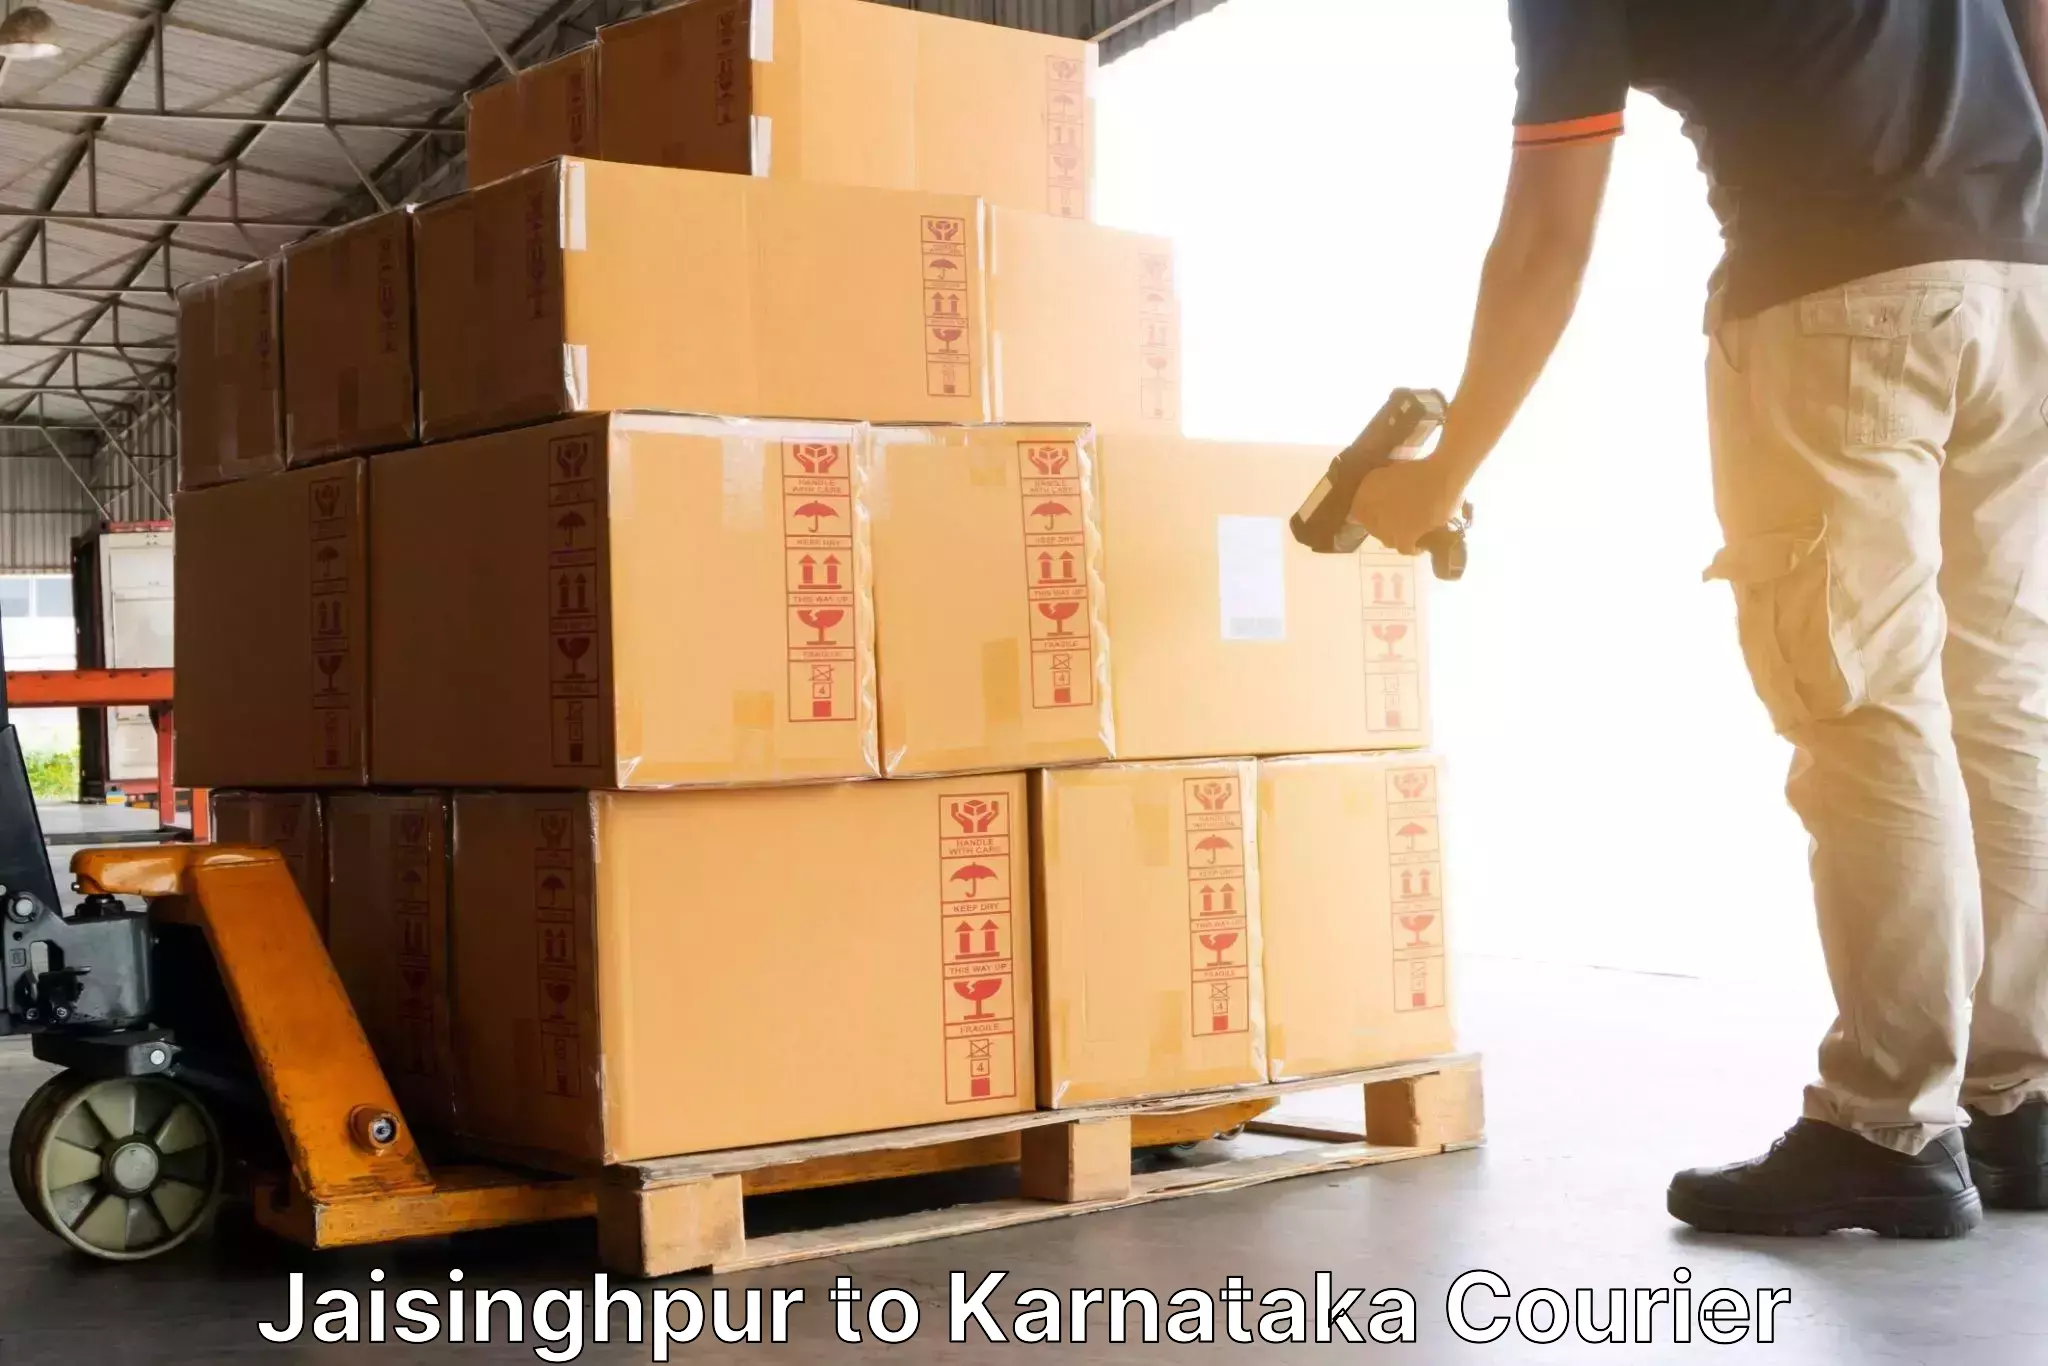 Door-to-door shipment in Jaisinghpur to Yellare